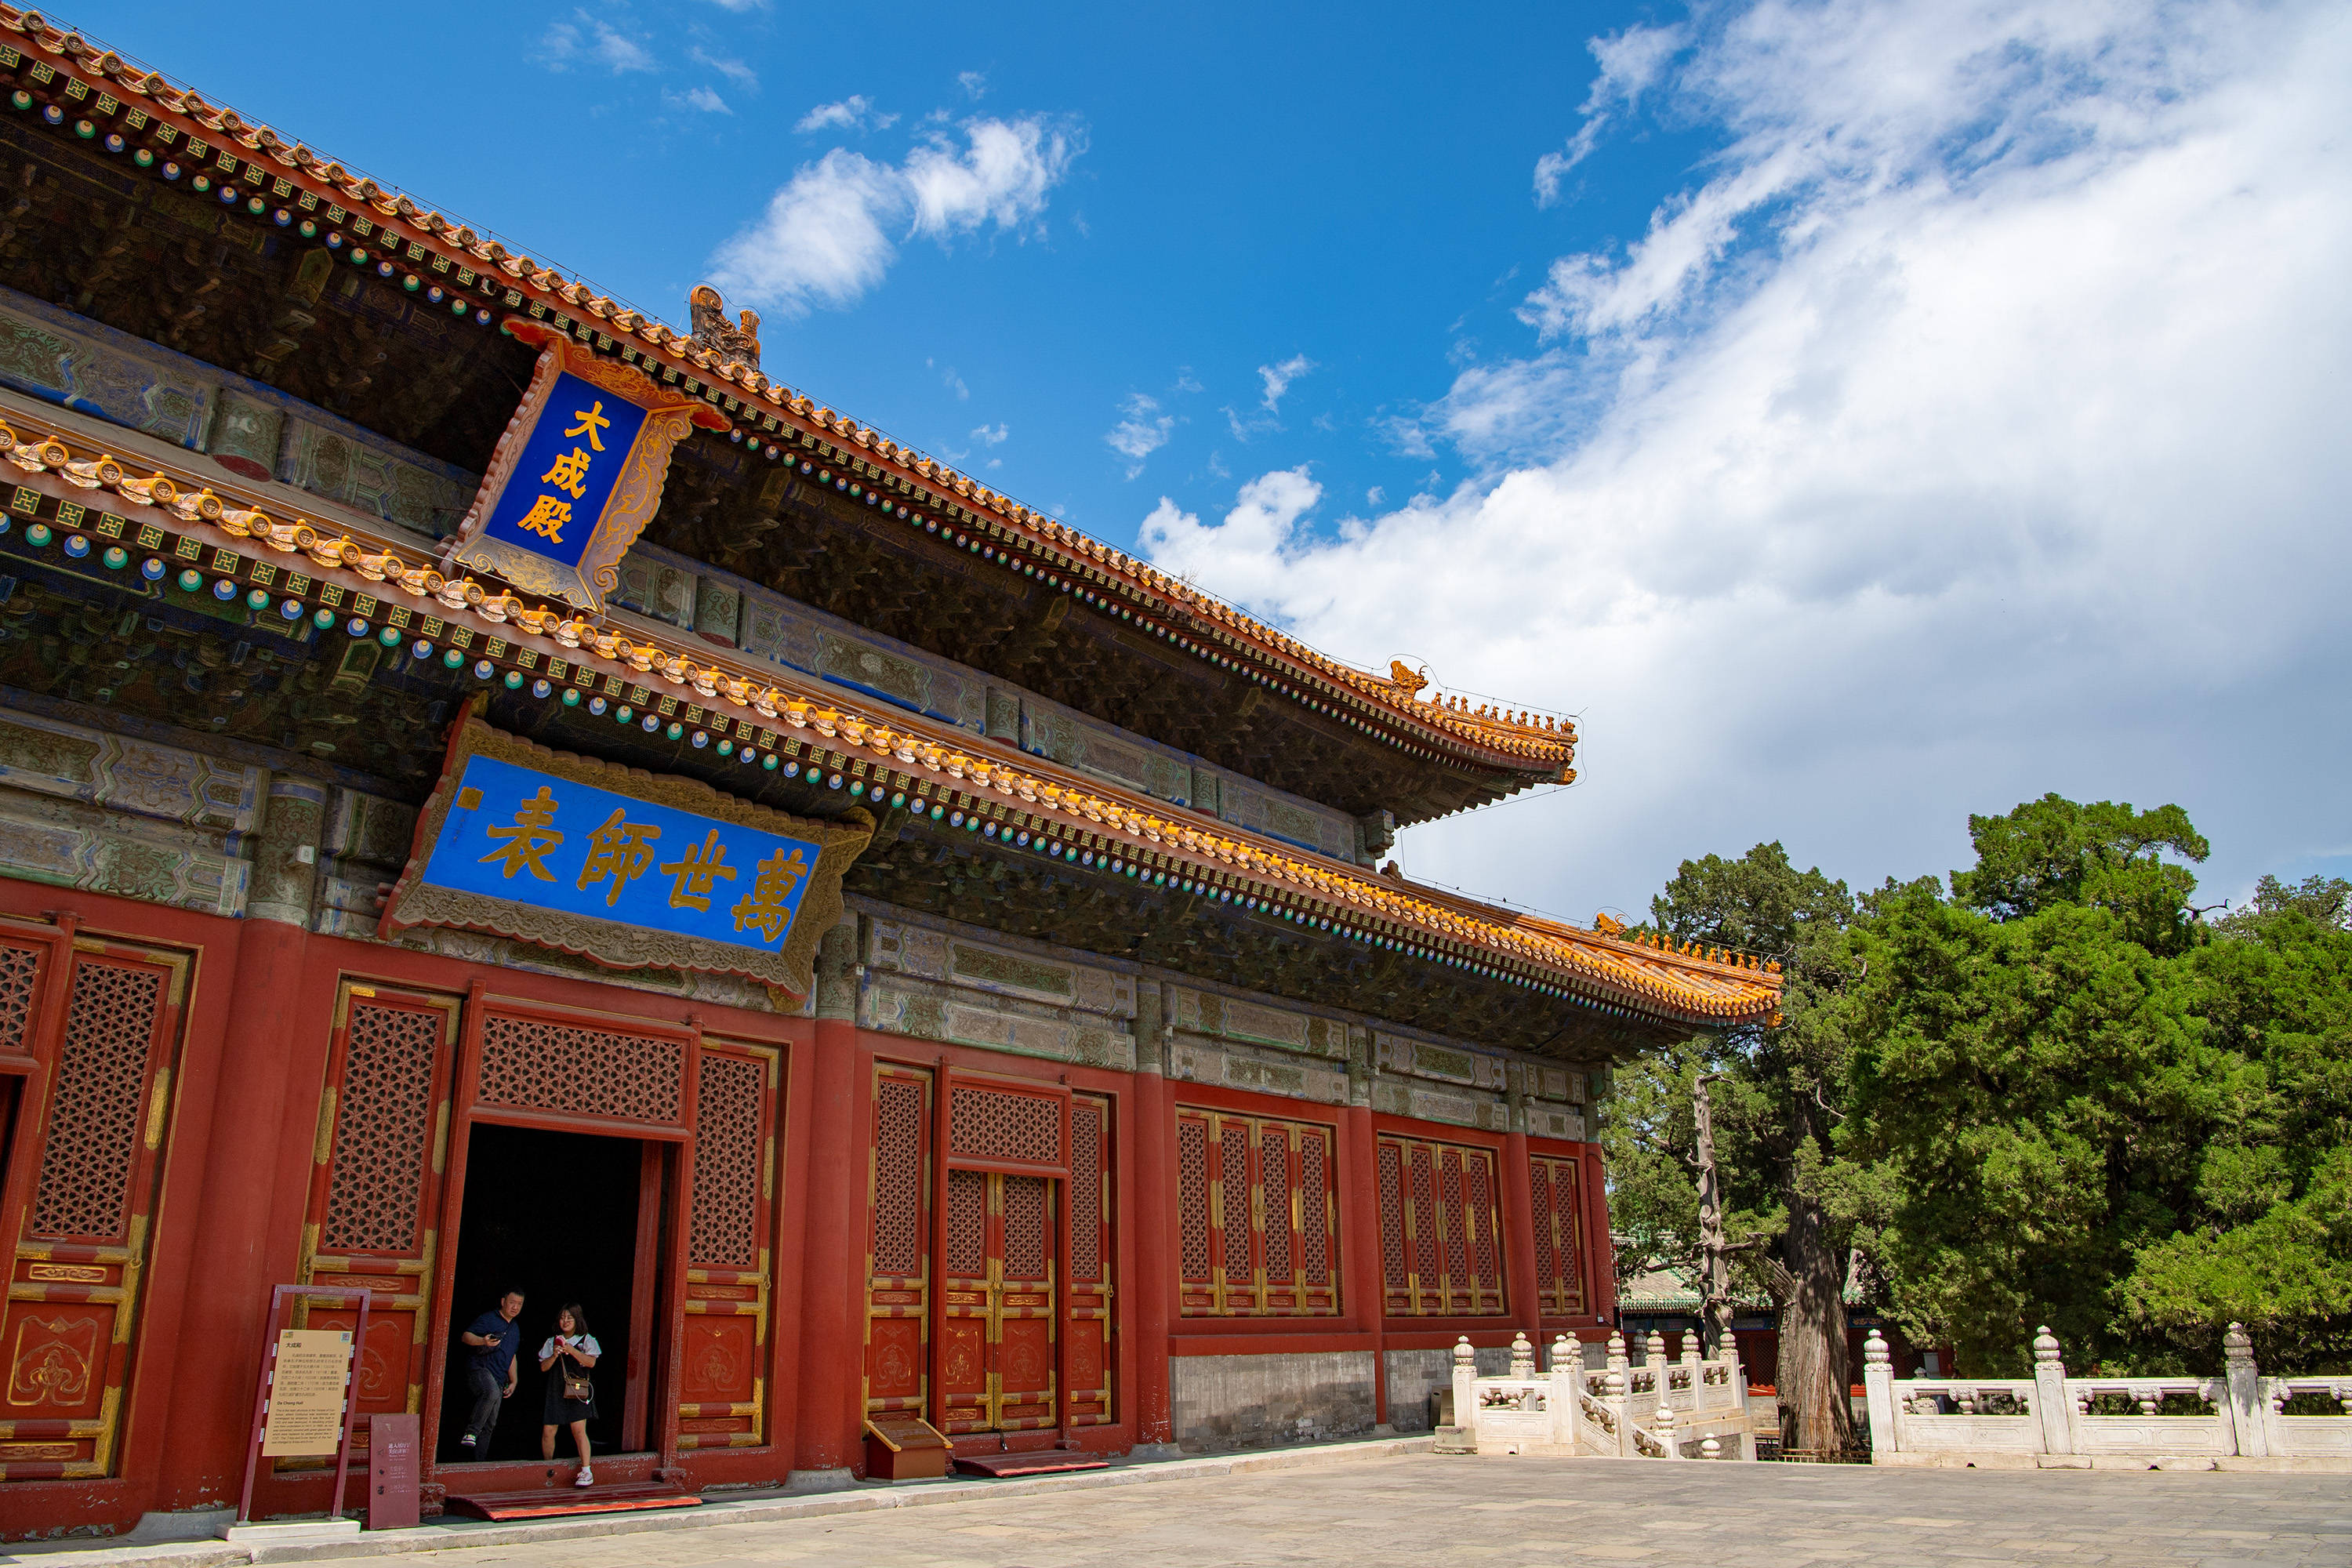 北京孔庙的神秘建筑,雕琢精美绿琉璃瓦的小房子,一问作用笑哭了